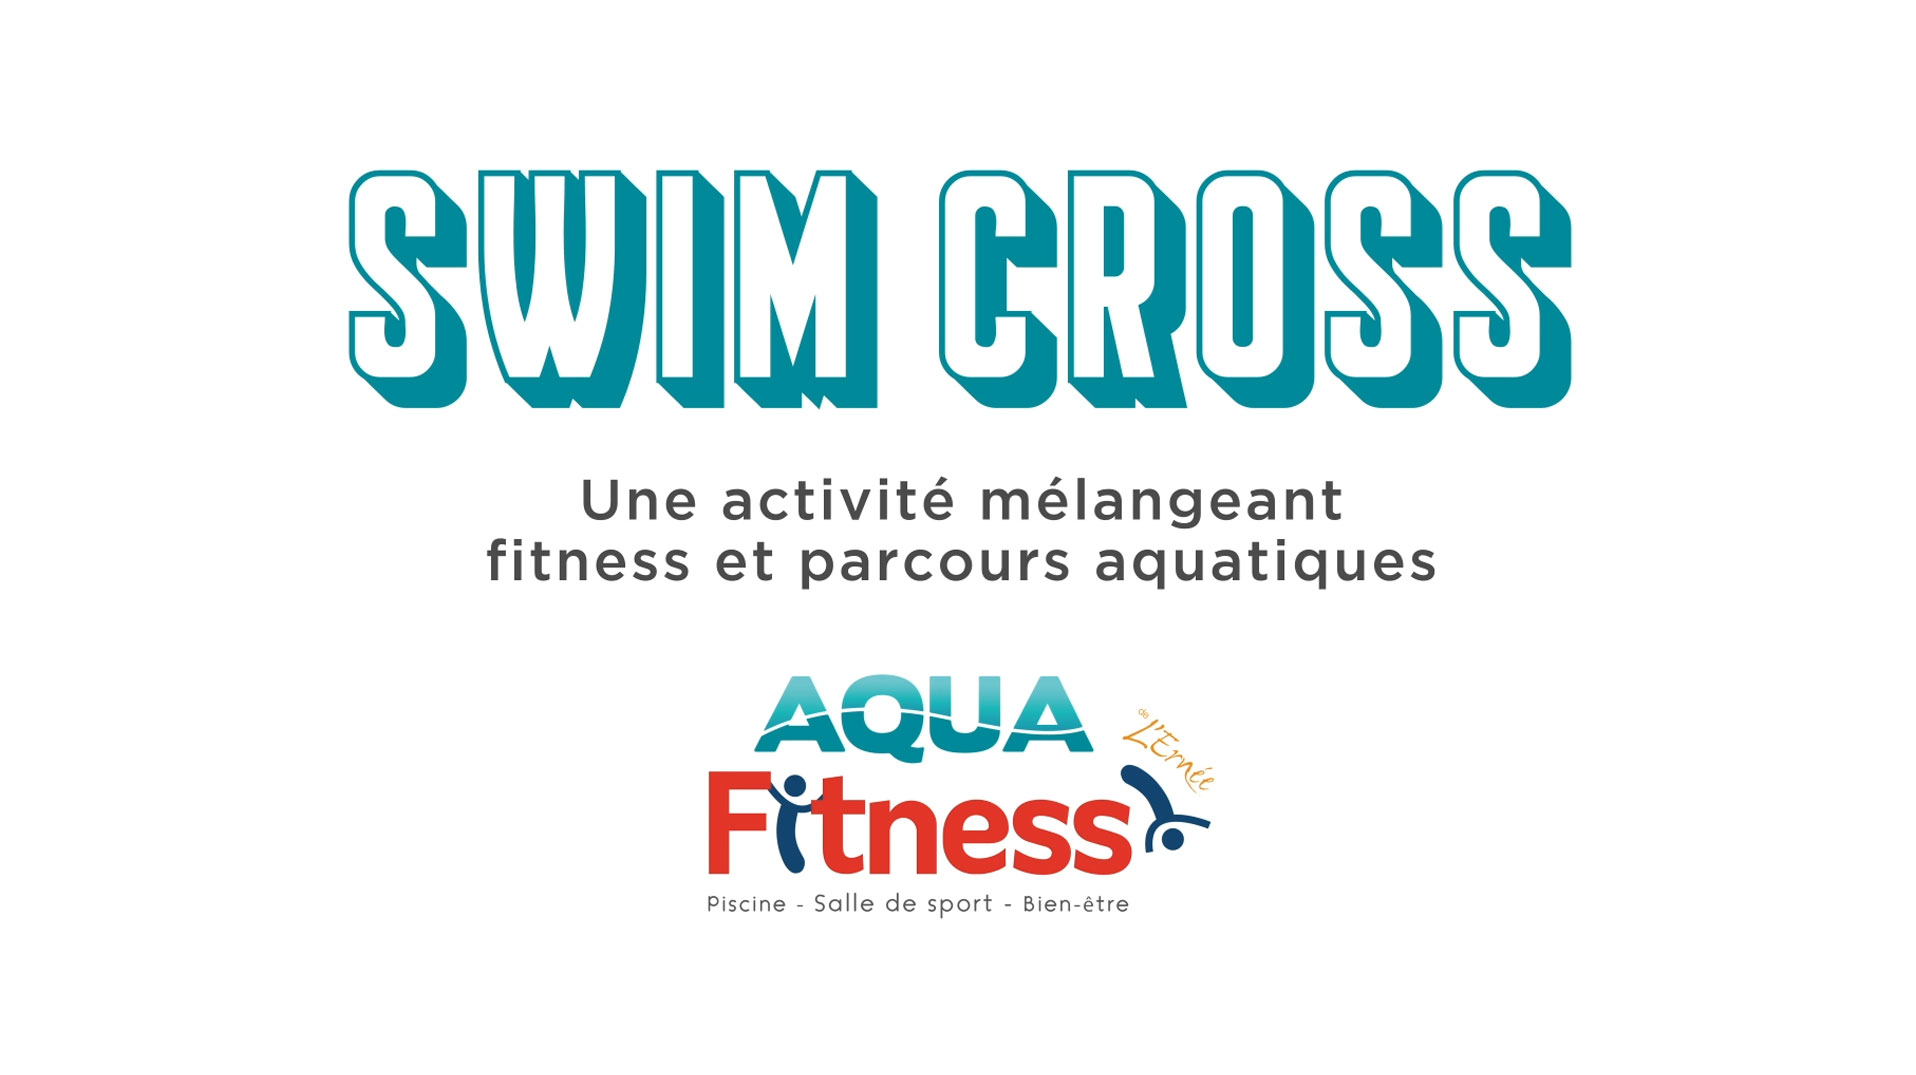 Swim Cross à l'AquaFitness !